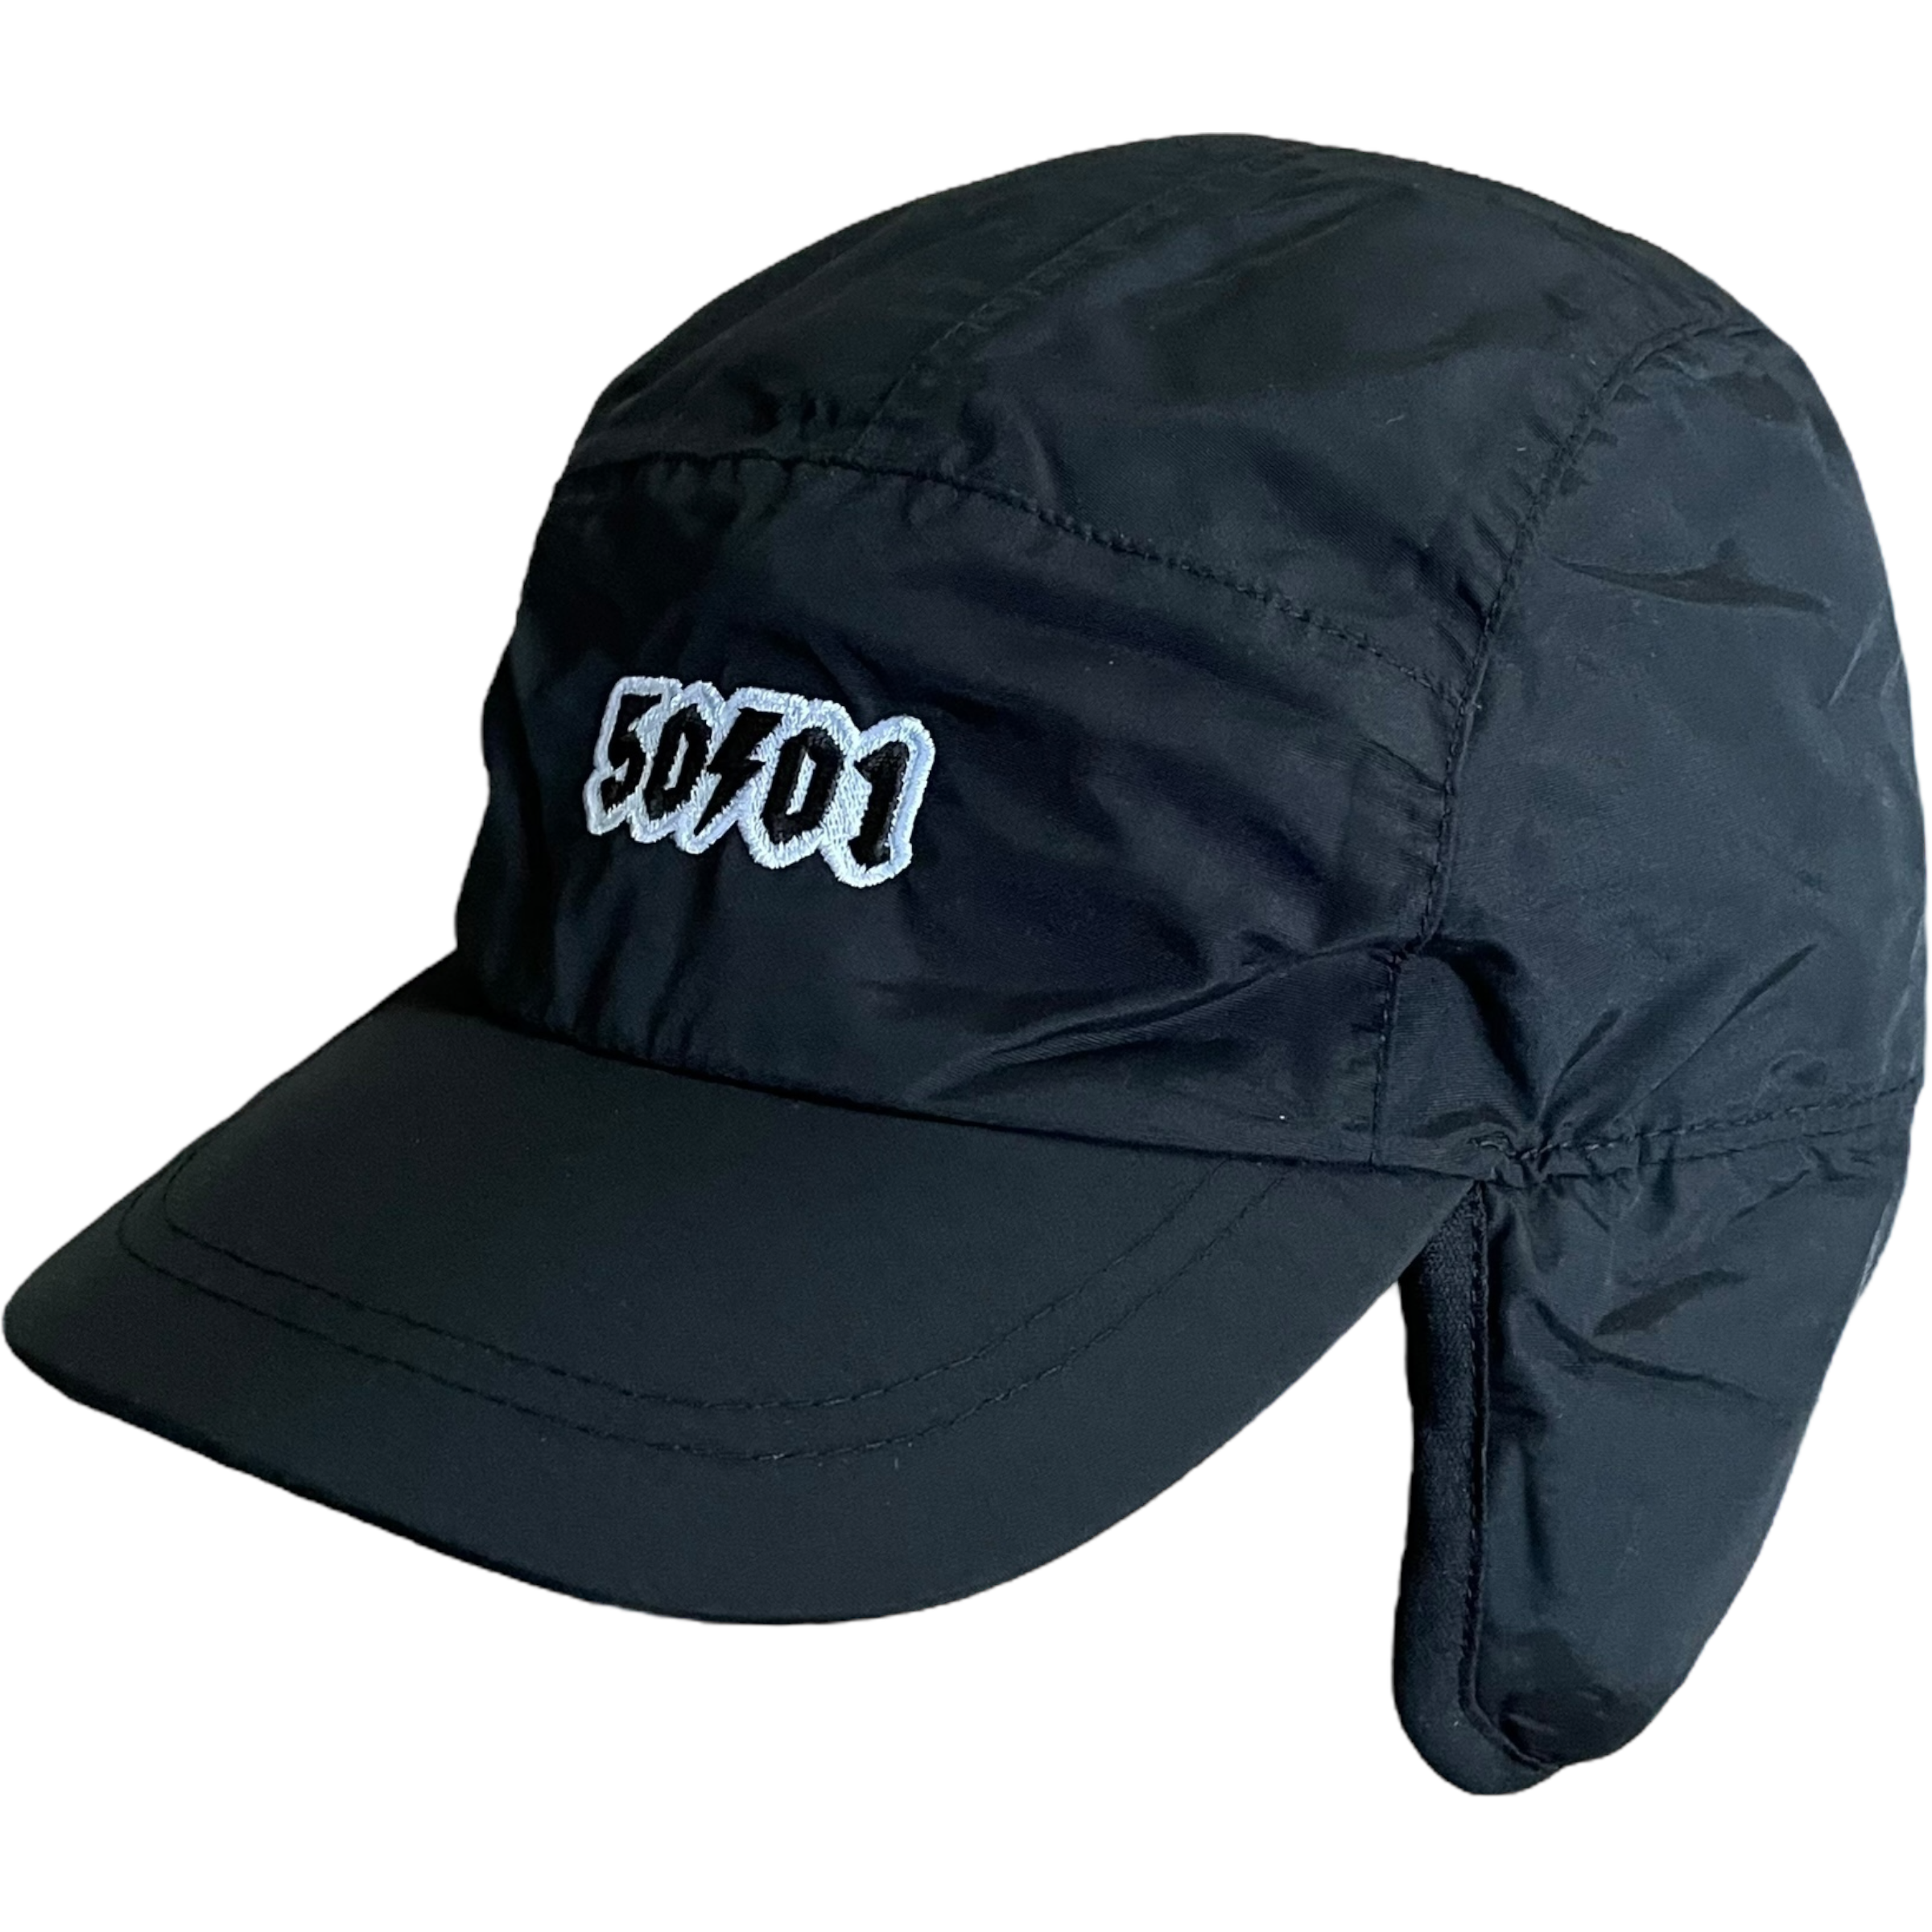 50to01 - MOUNTAIN CAP BLACK